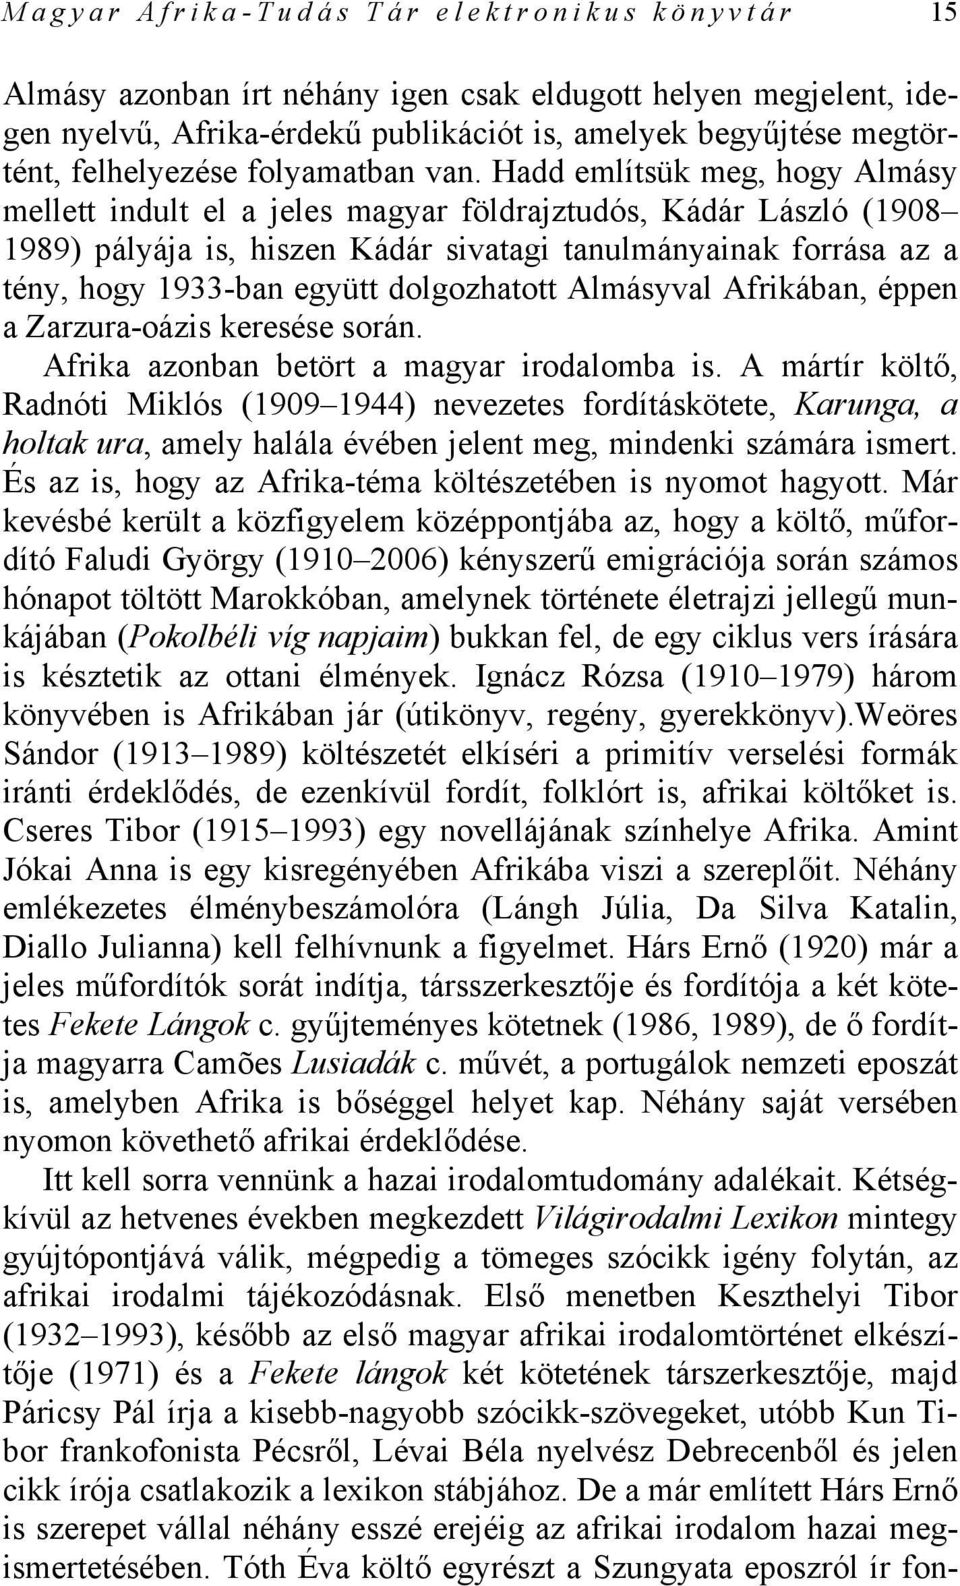 Hadd említsük meg, hogy Almásy mellett indult el a jeles magyar földrajztudós, Kádár László (1908 1989) pályája is, hiszen Kádár sivatagi tanulmányainak forrása az a tény, hogy 1933-ban együtt